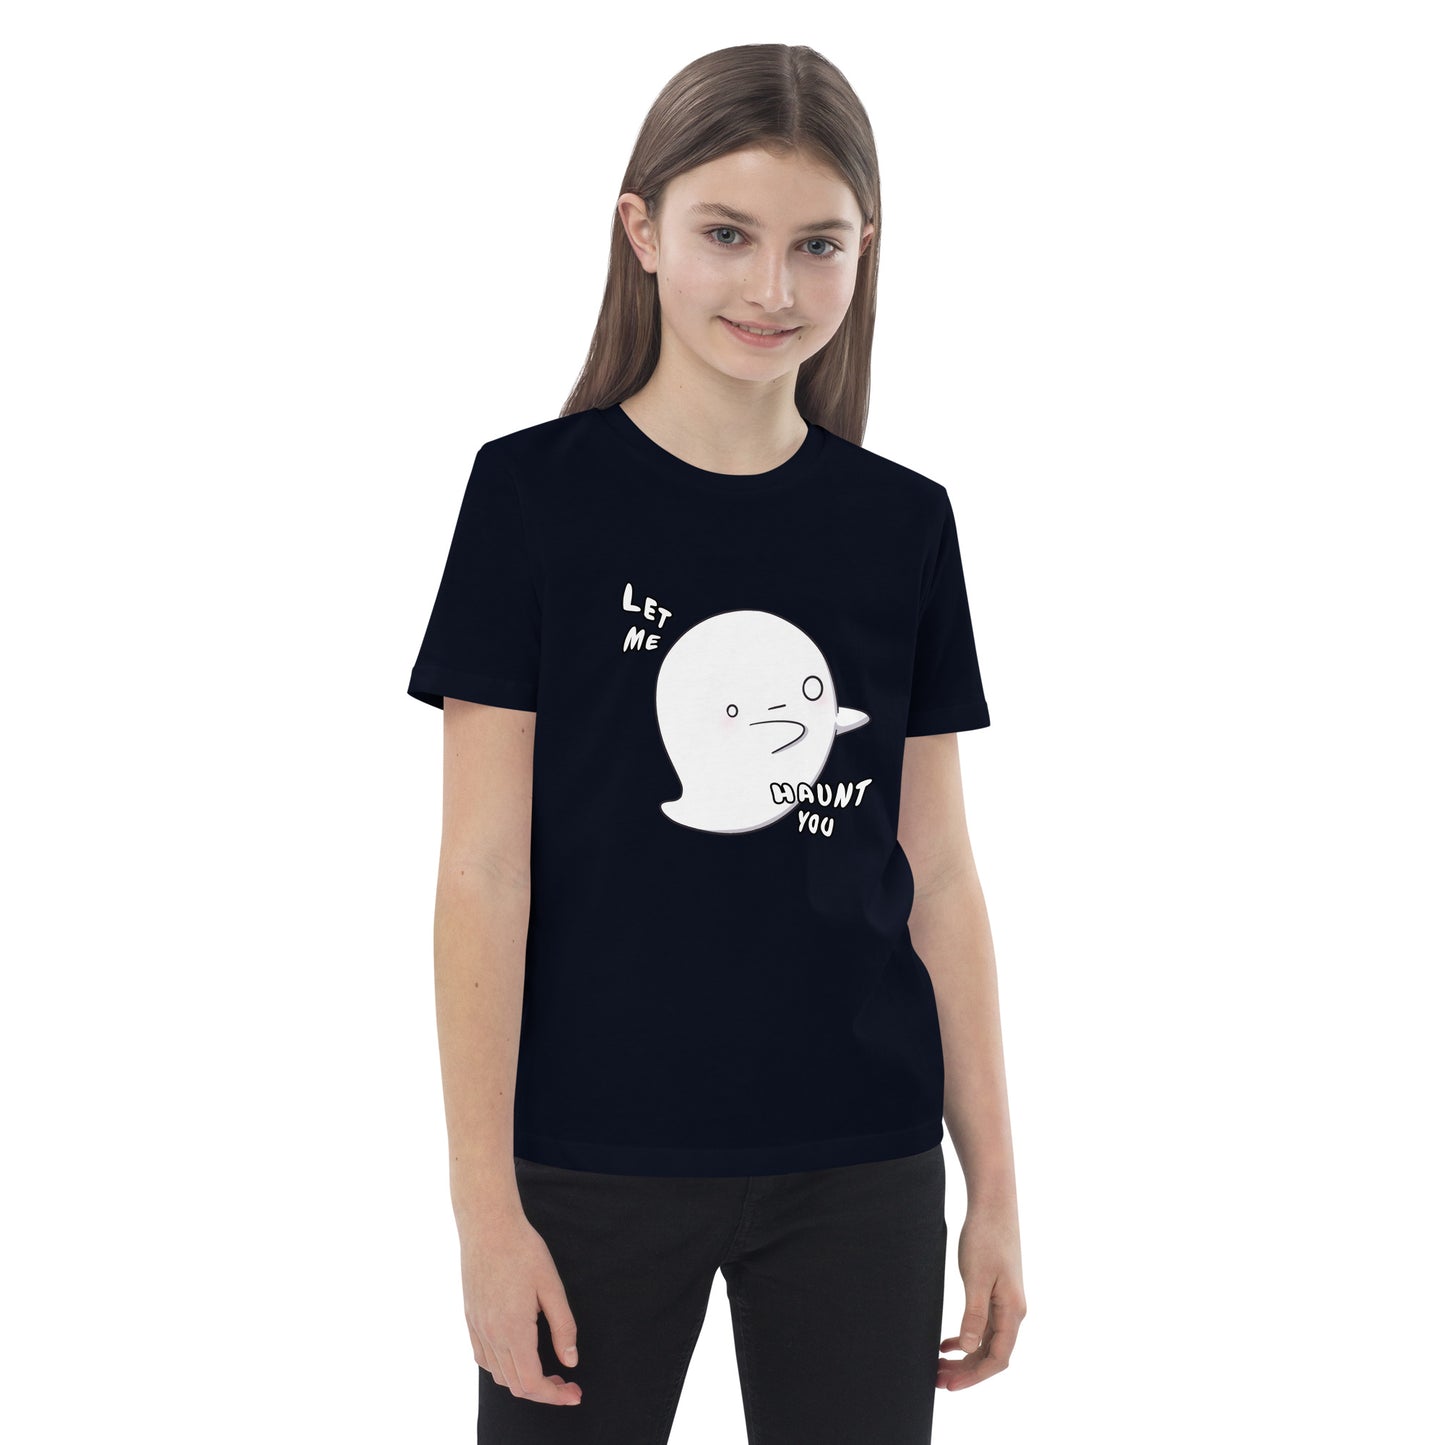 Let me haunt you - Organic cotton kids t-shirt